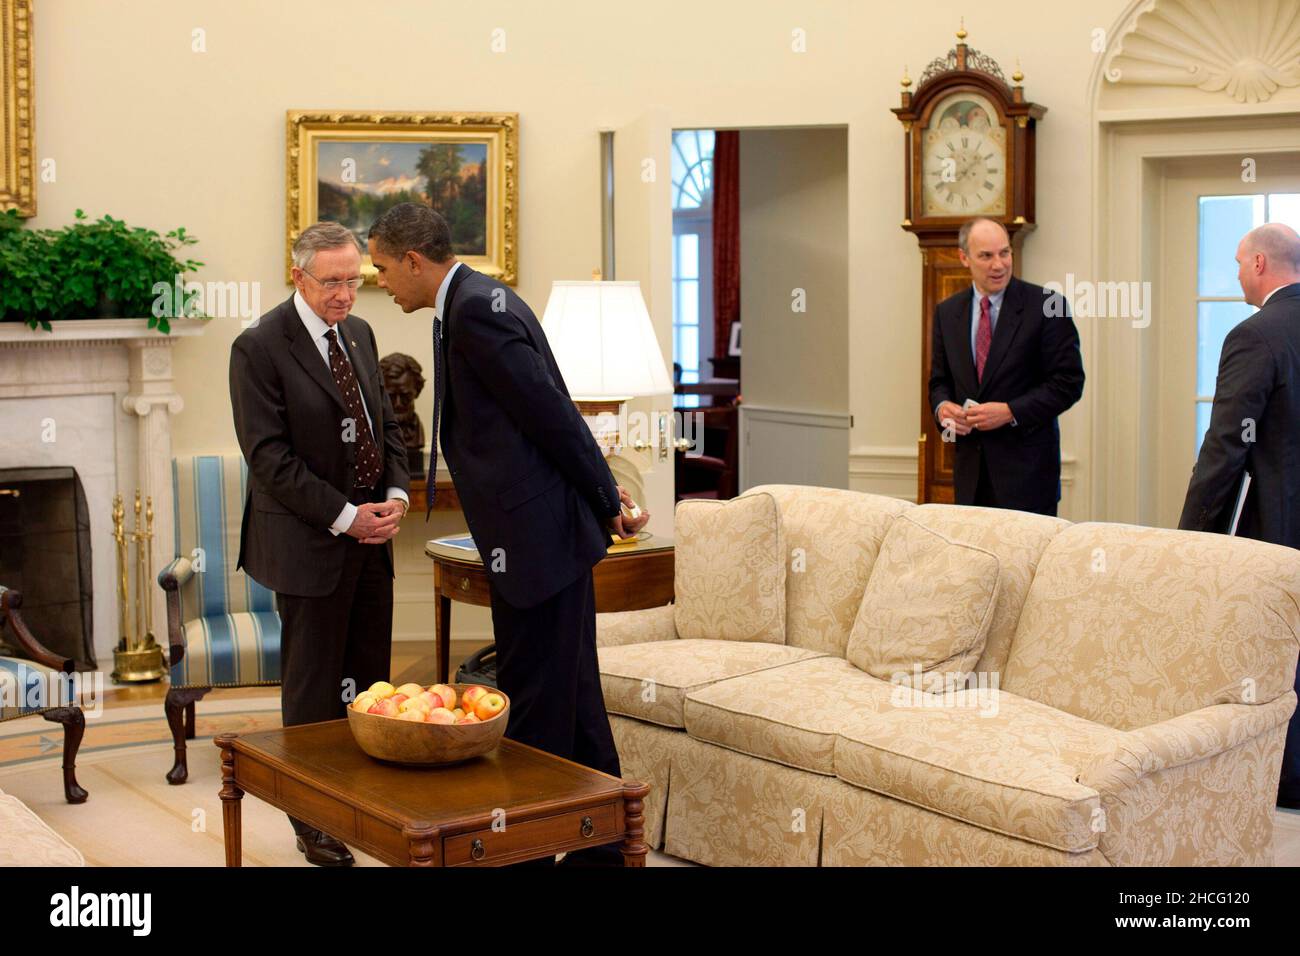 Washington, DC - 8. Oktober 2009 -- US-Präsident Barack Obama spricht mit dem Mehrheitsführer des Senats, Harry Reid, nach ihrem Treffen mit der Sprecherin des Repräsentantenhauses, Nancy Pelosi, im Oval Office, am Mittwoch, den 7. Oktober 2009. Obligatorische Gutschrift: Pete Souza - White House über CNP Stockfoto